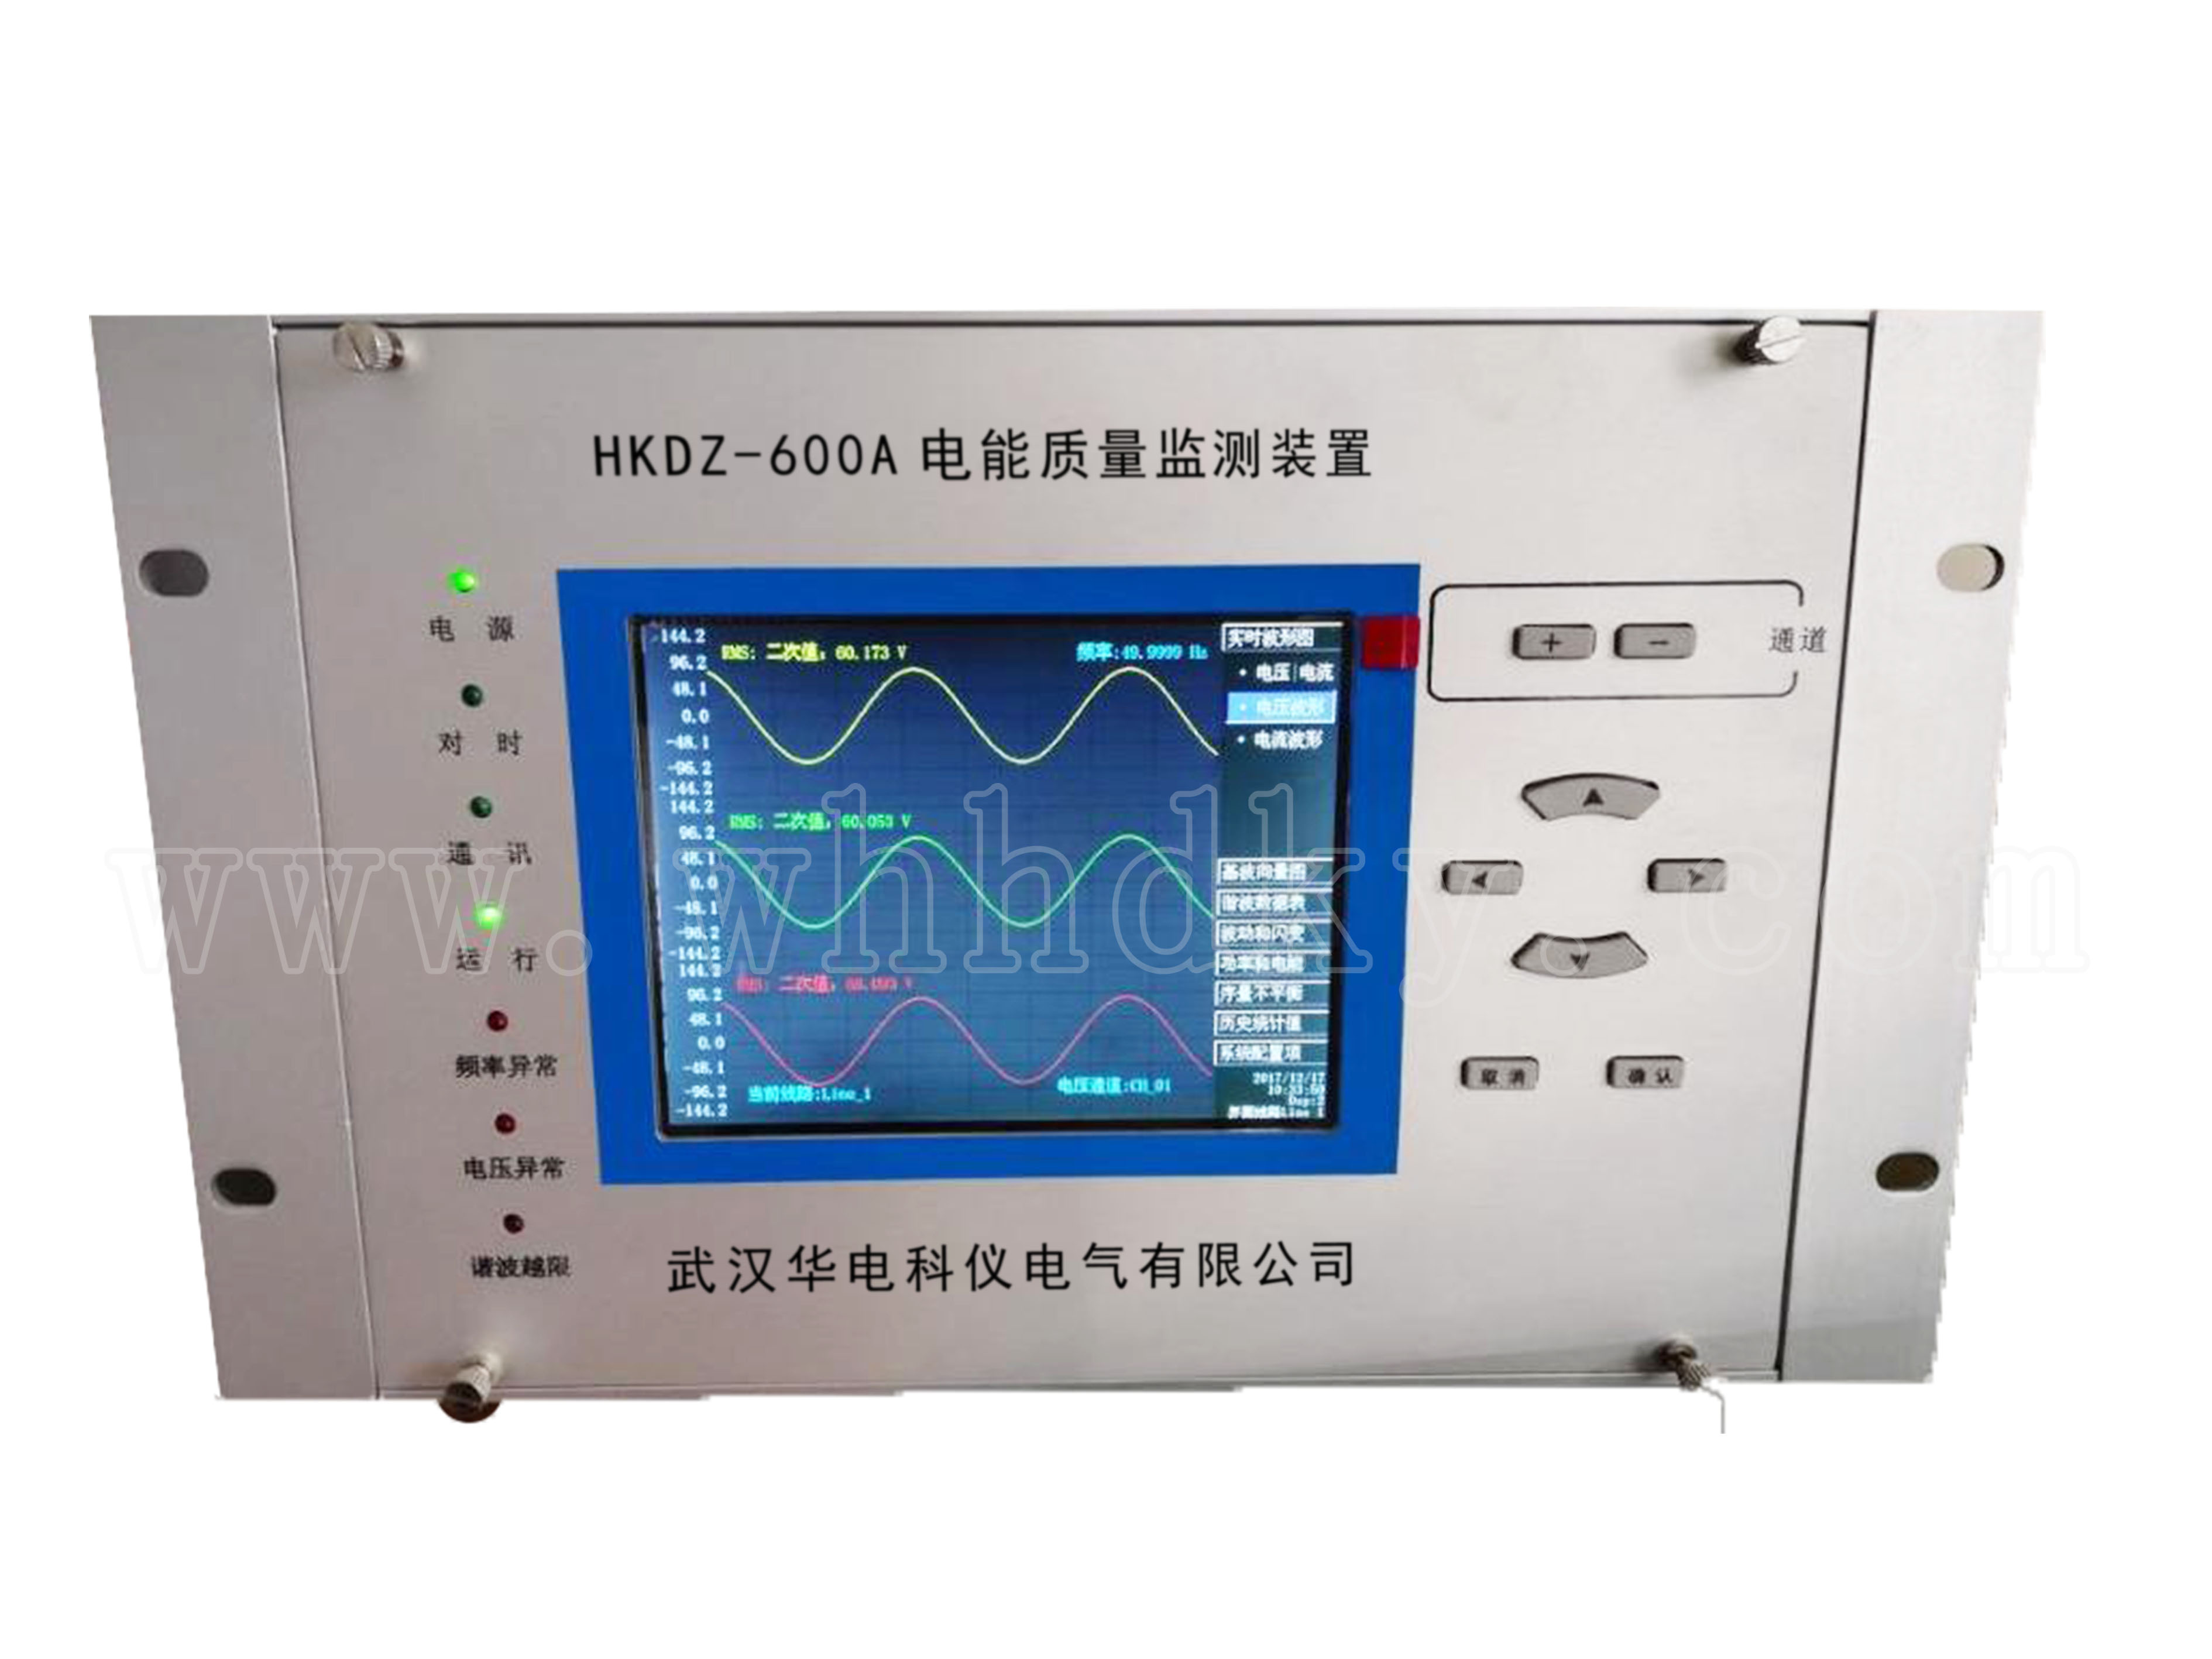 HKDZ-600A电能质量监测装置